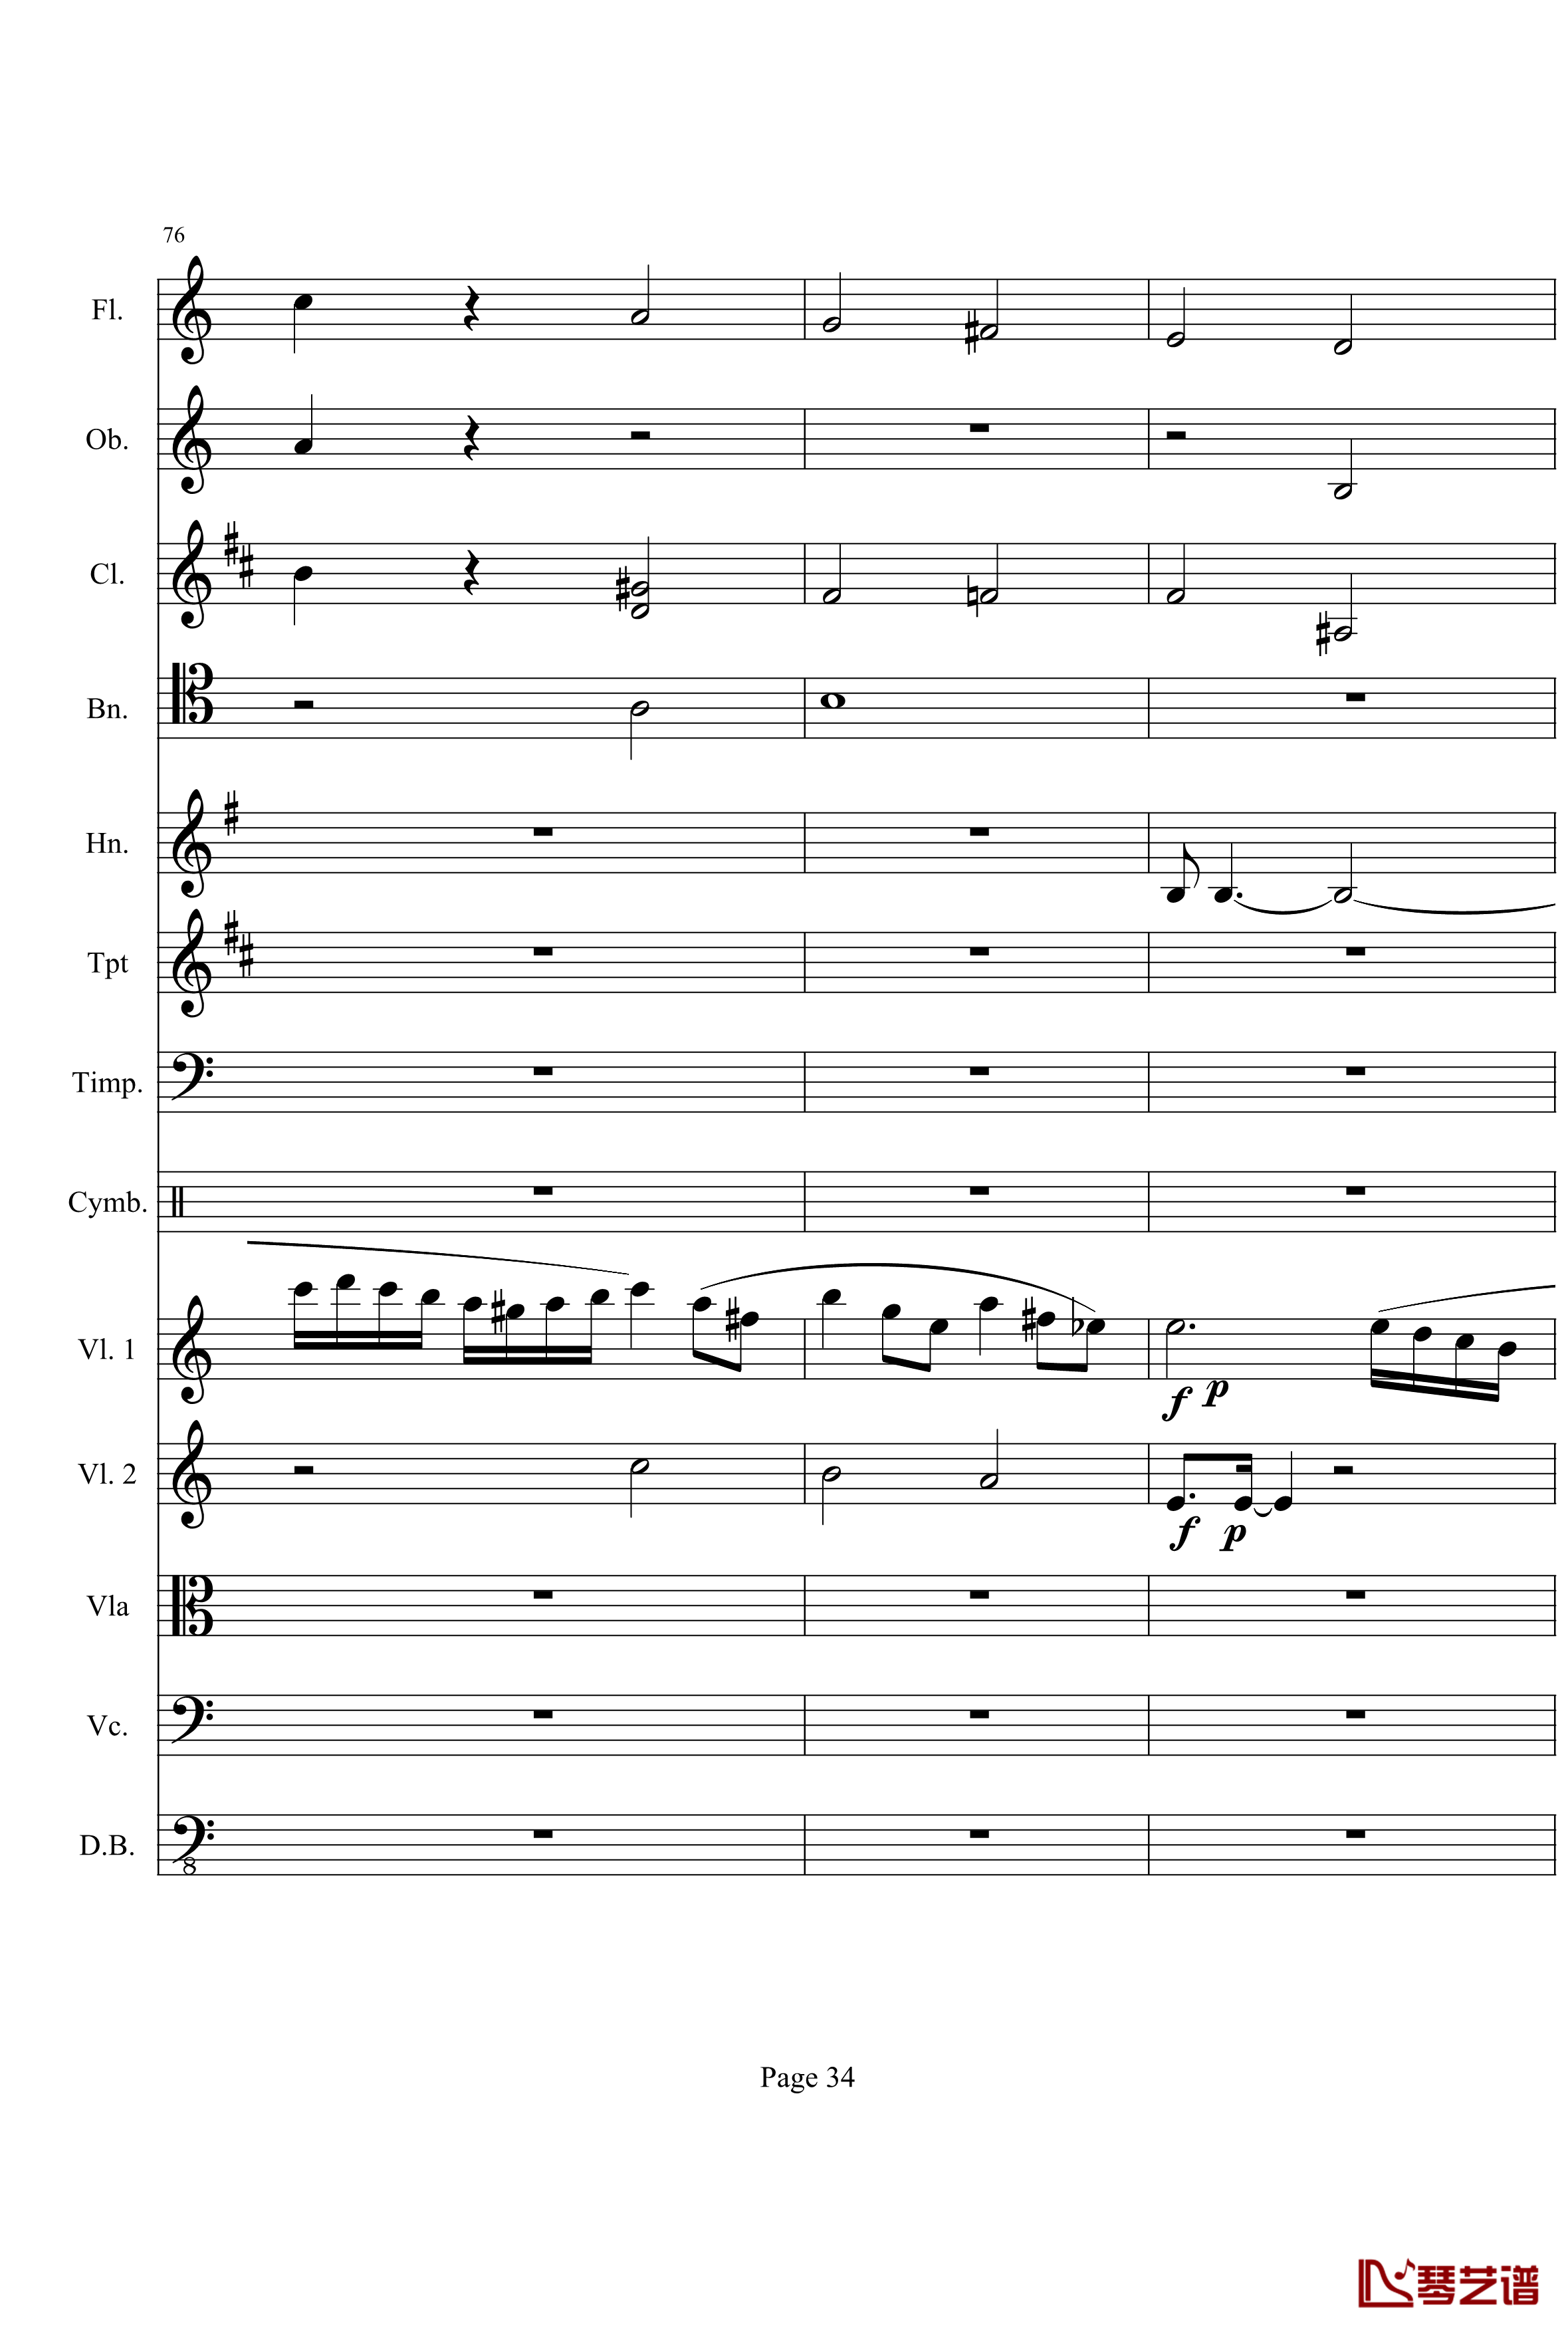 奏鸣曲之交响钢琴谱-第21-Ⅰ-贝多芬-beethoven34